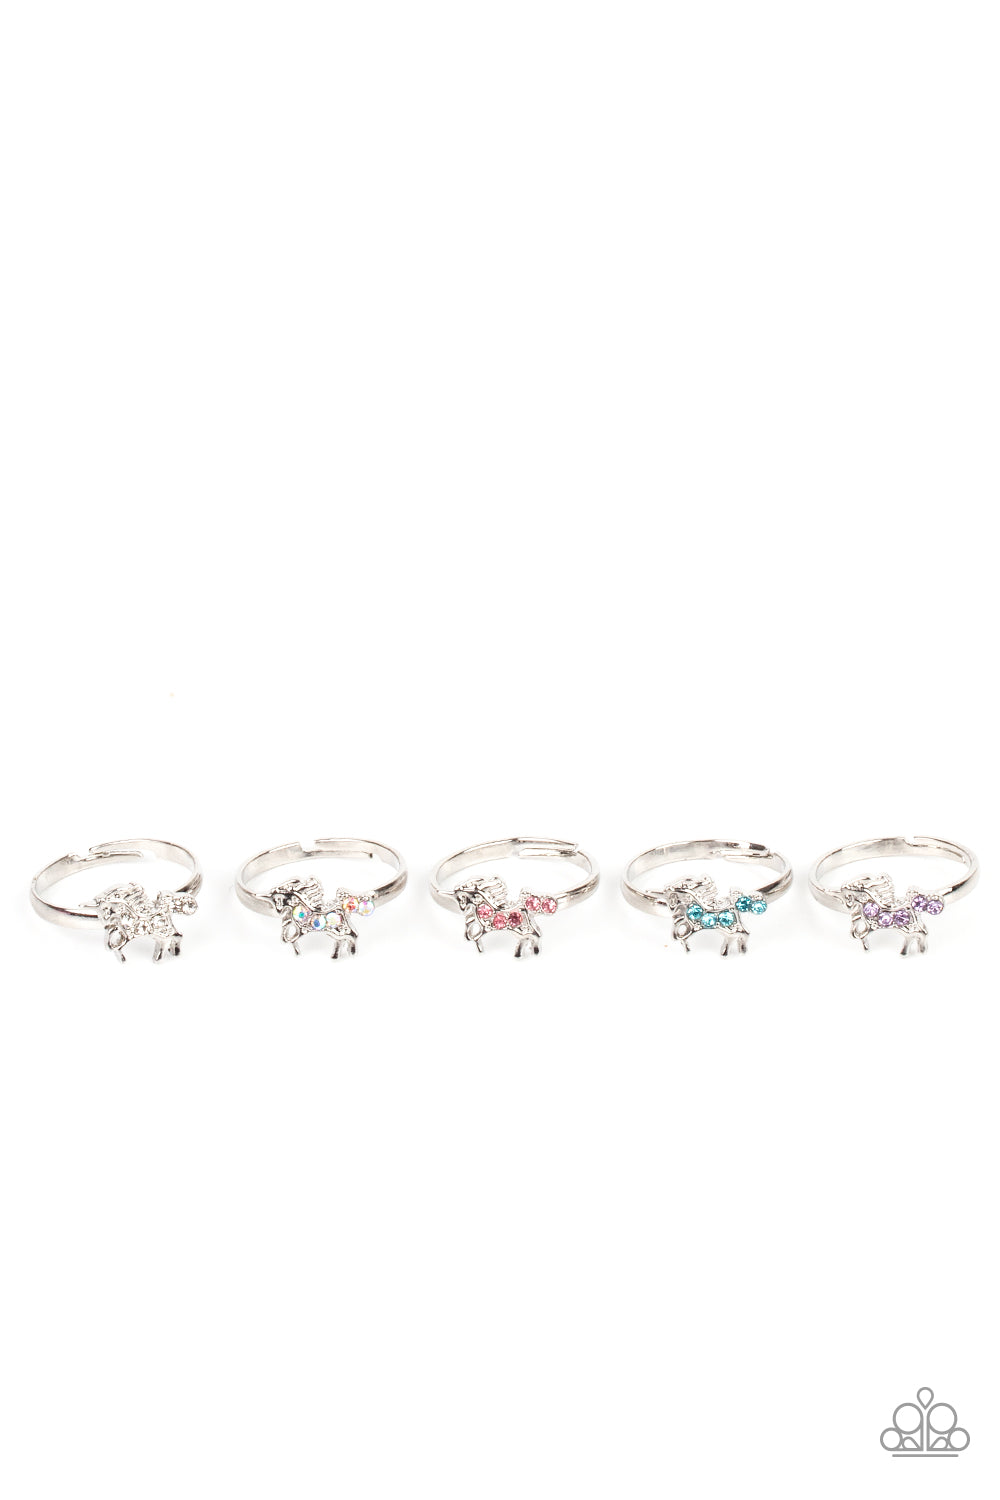 Starlet Shimmer - Unicorn Rings - Multicolor - 5 Pack